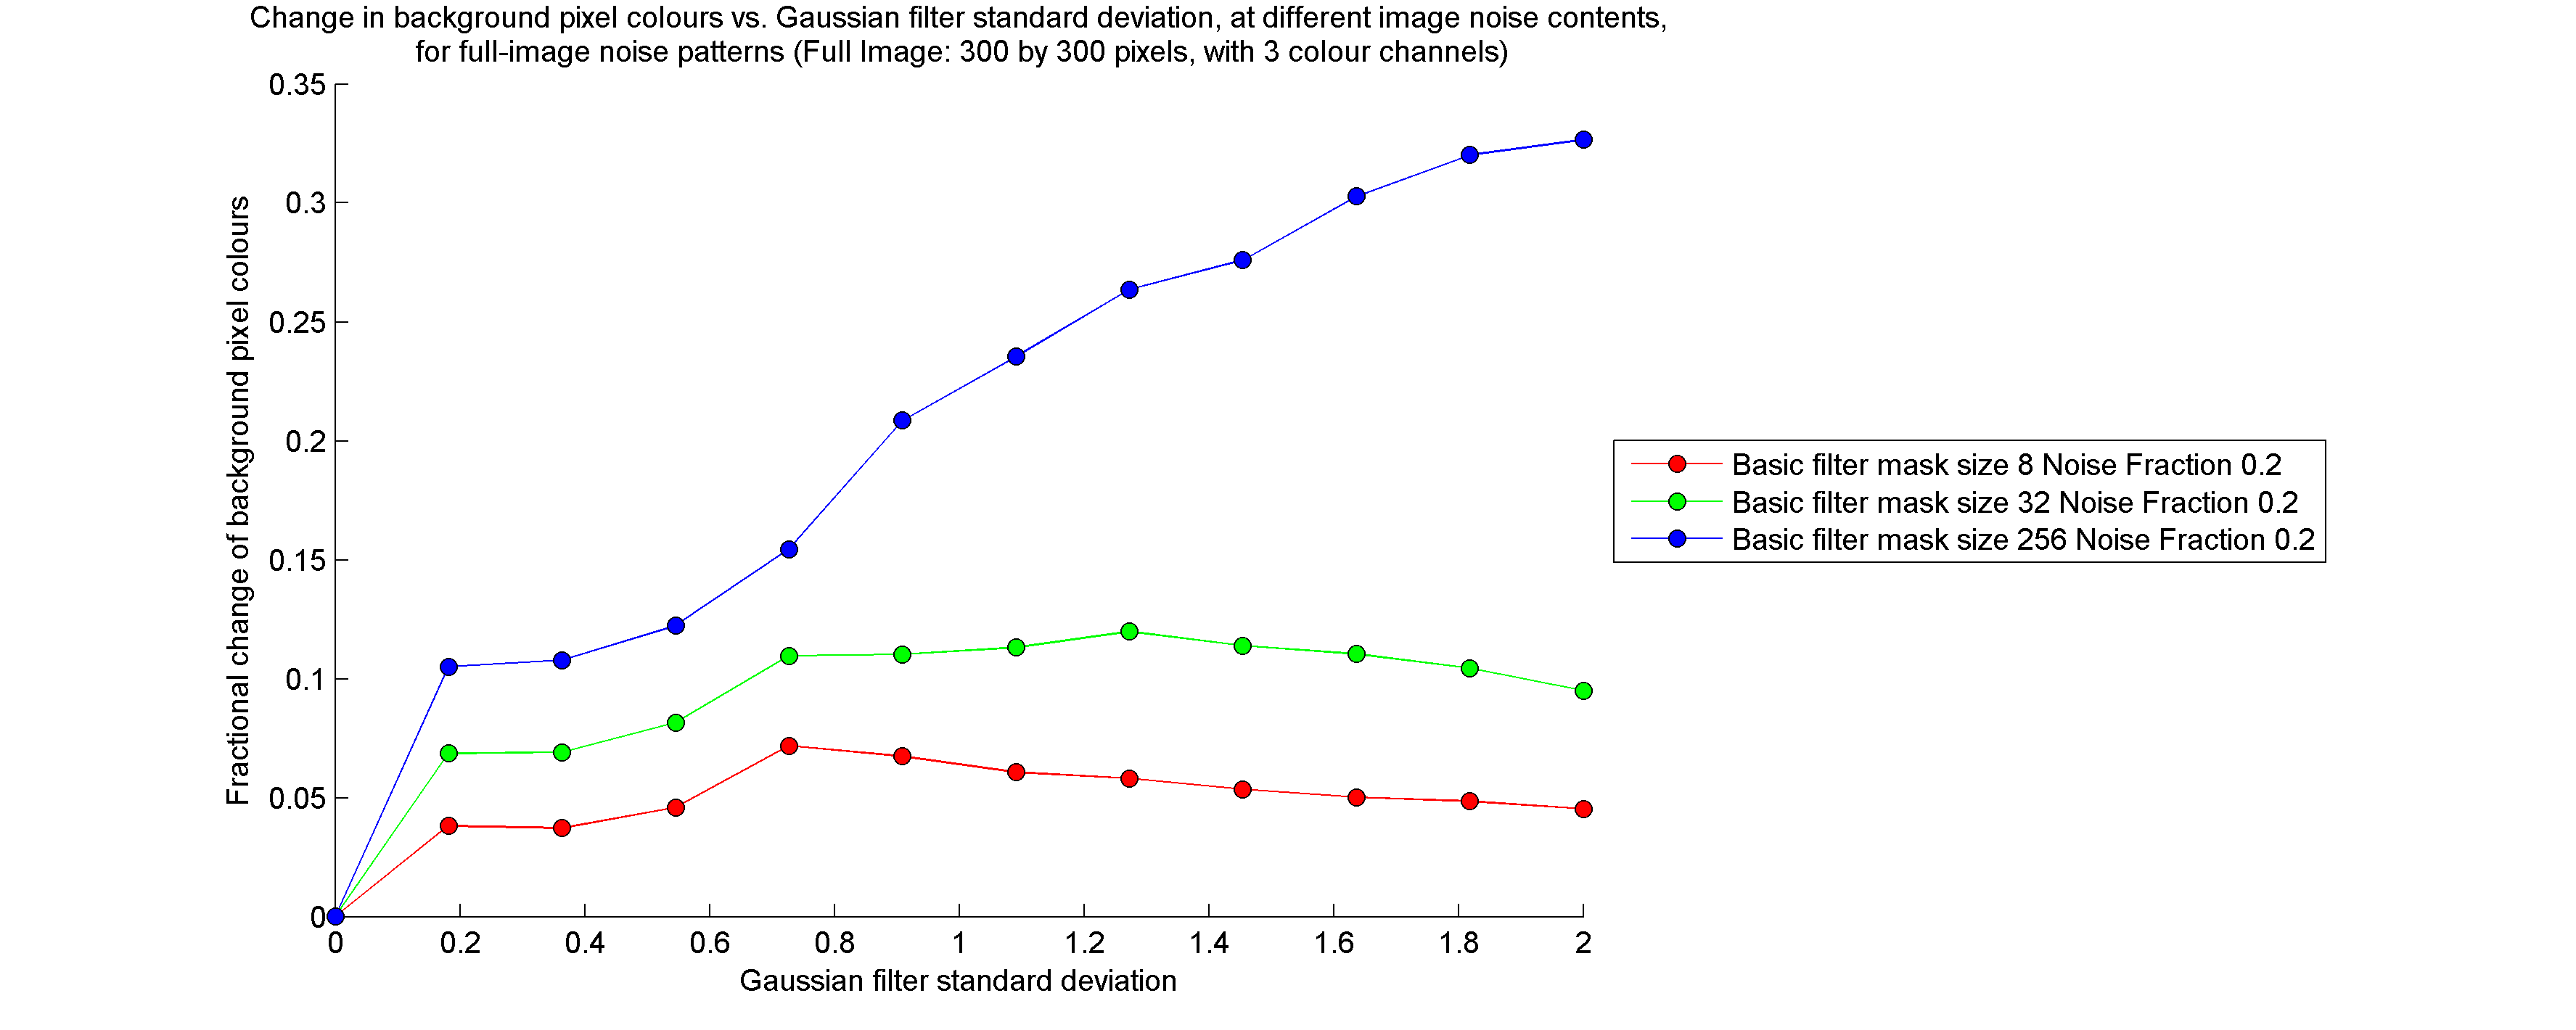 Background pixel colour change vs Gaussian standard deviation